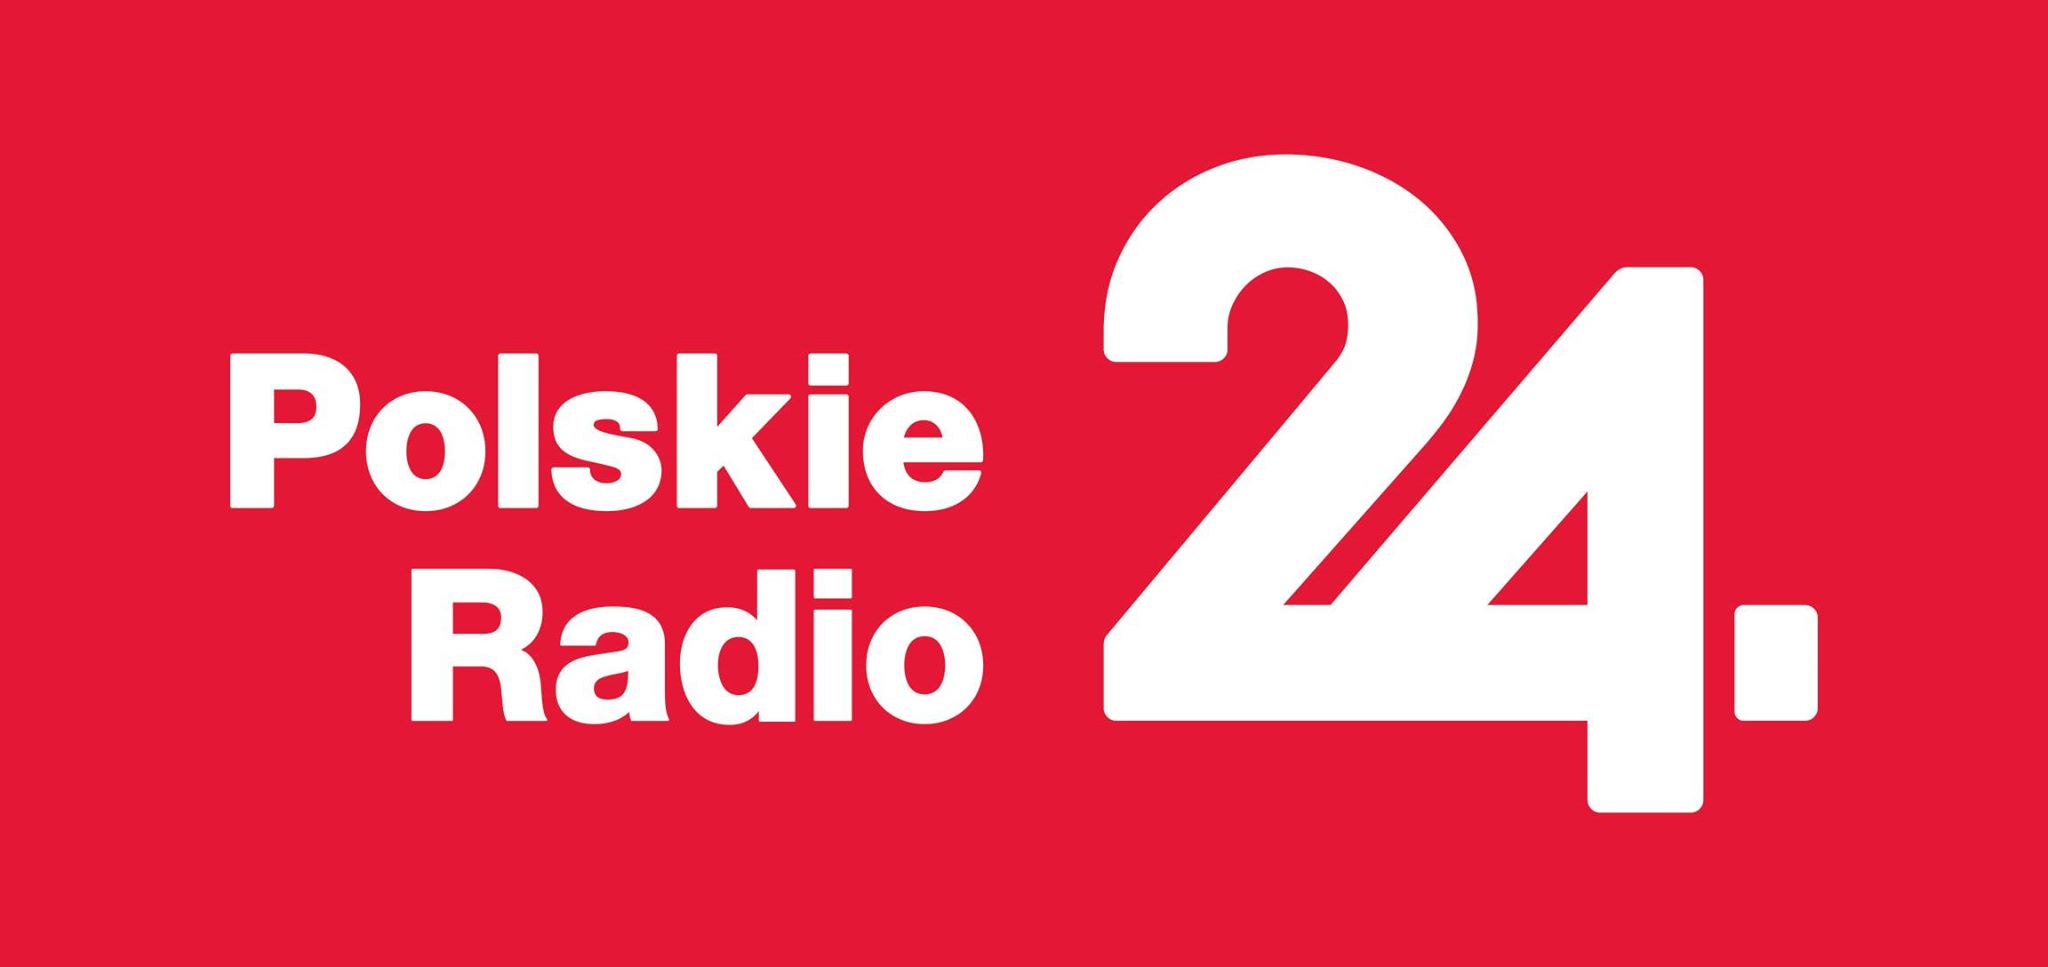 Polskie Radio 24 – 23.04.2016 – Grzegorz Frątczak – Akcelerator startupów